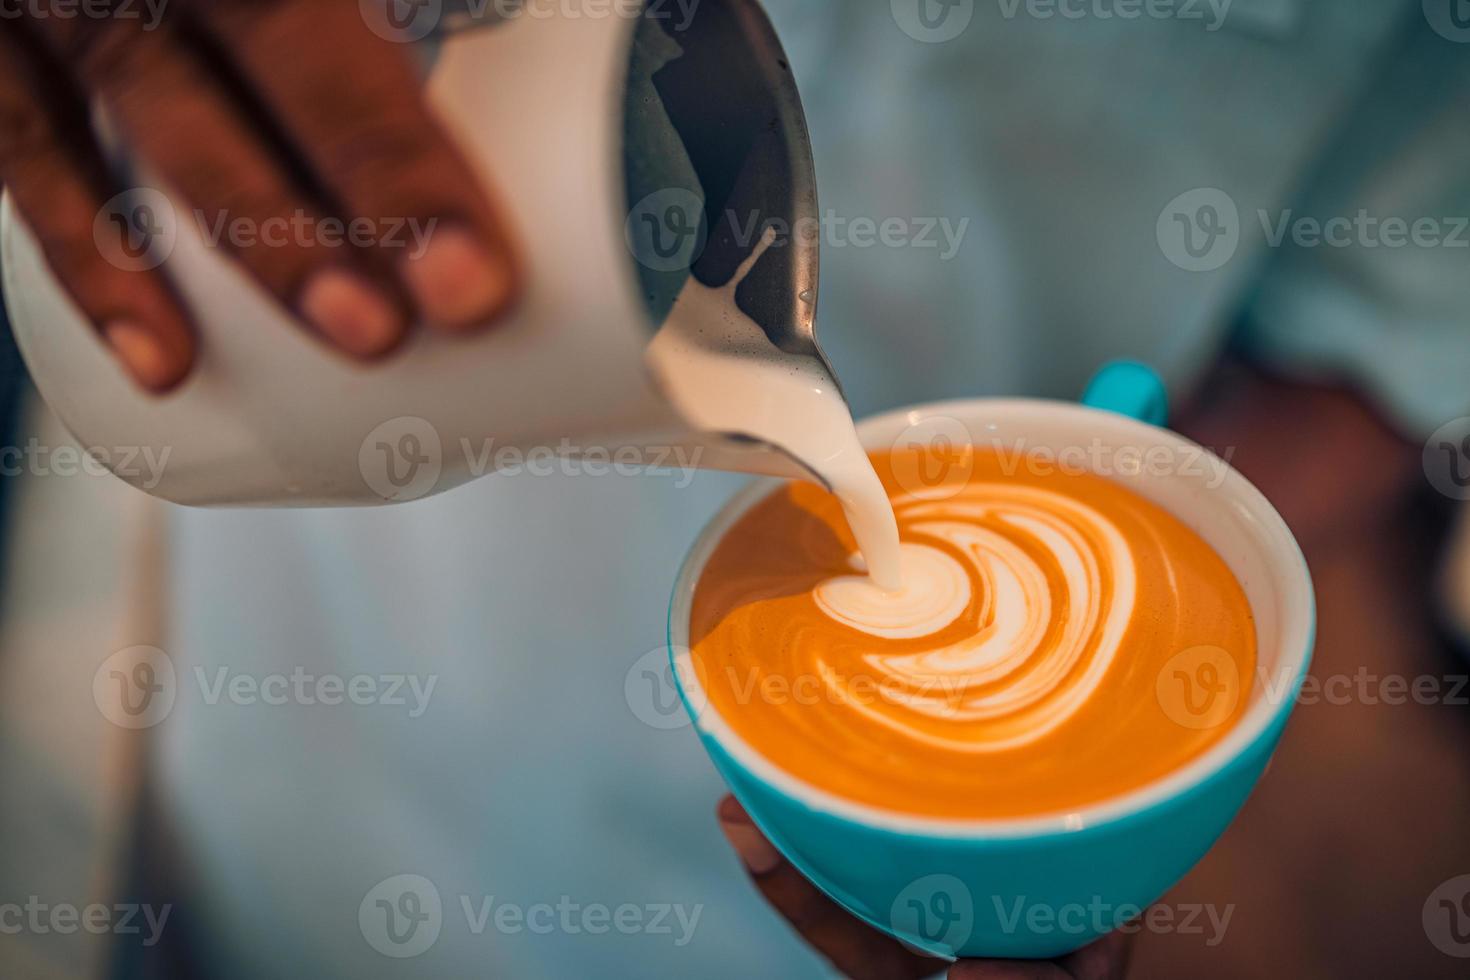 abstrakt kaffe affär närbild, kaffe kopp latte konst. Barista framställning en kopp av kaffe latte konst. årgång tona av några människor Häll i mjölk till framställning latte konst kaffe foto